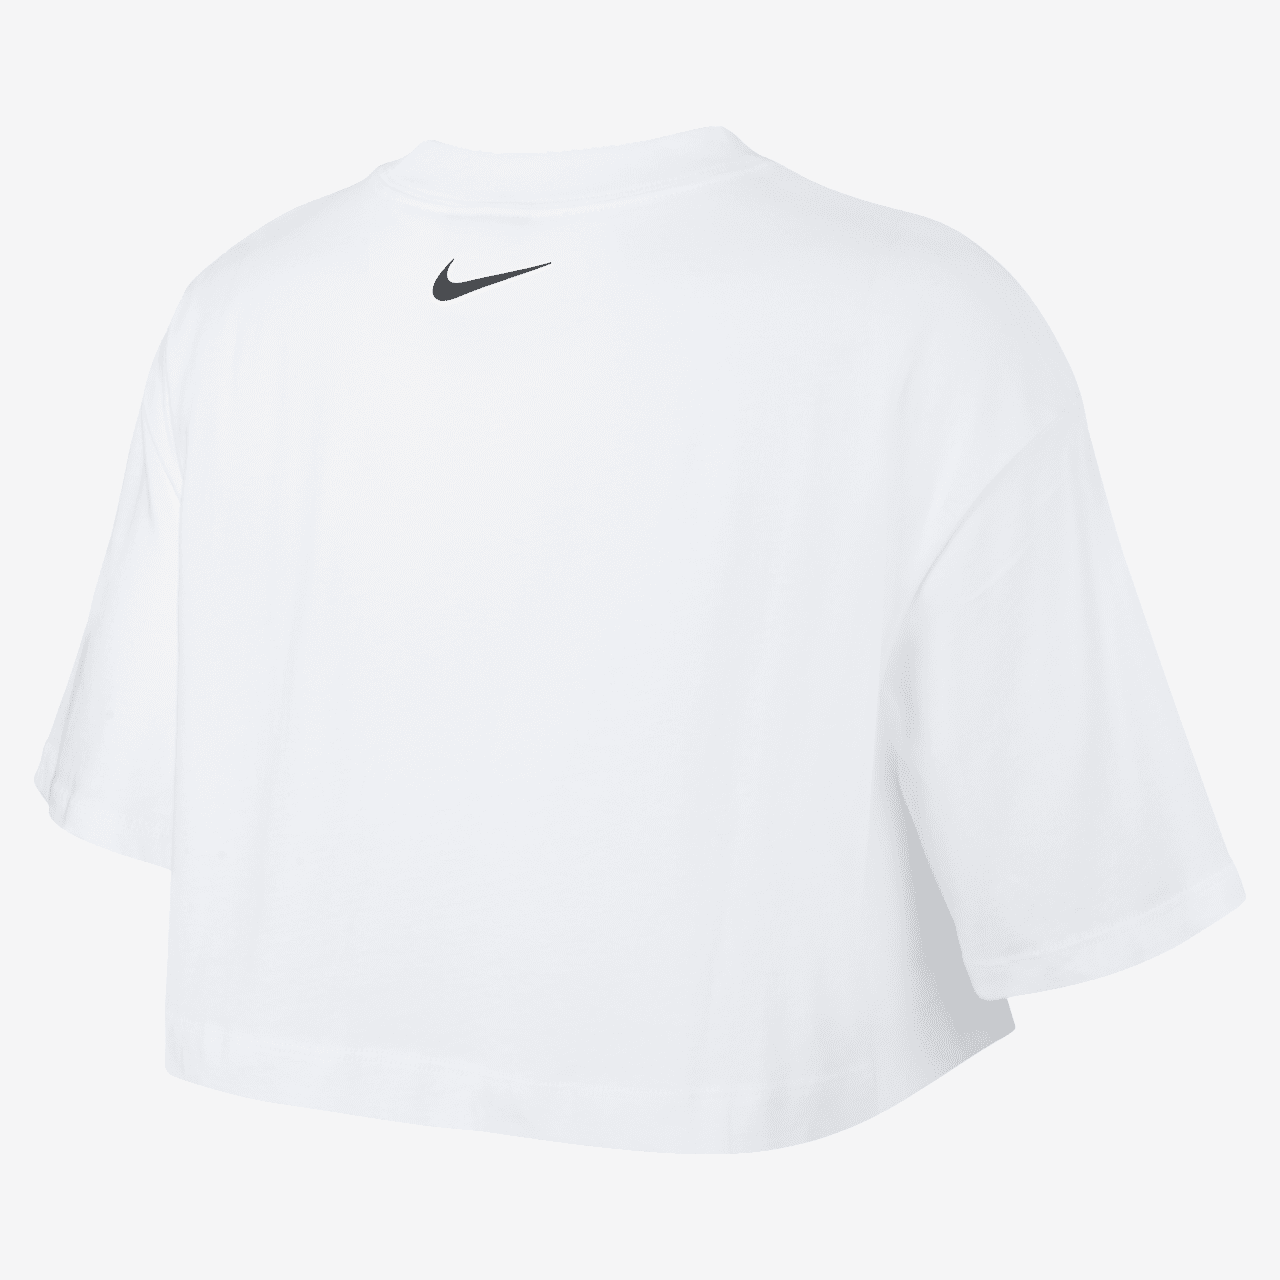 Short-Sleeve Crop Top. Nike DK